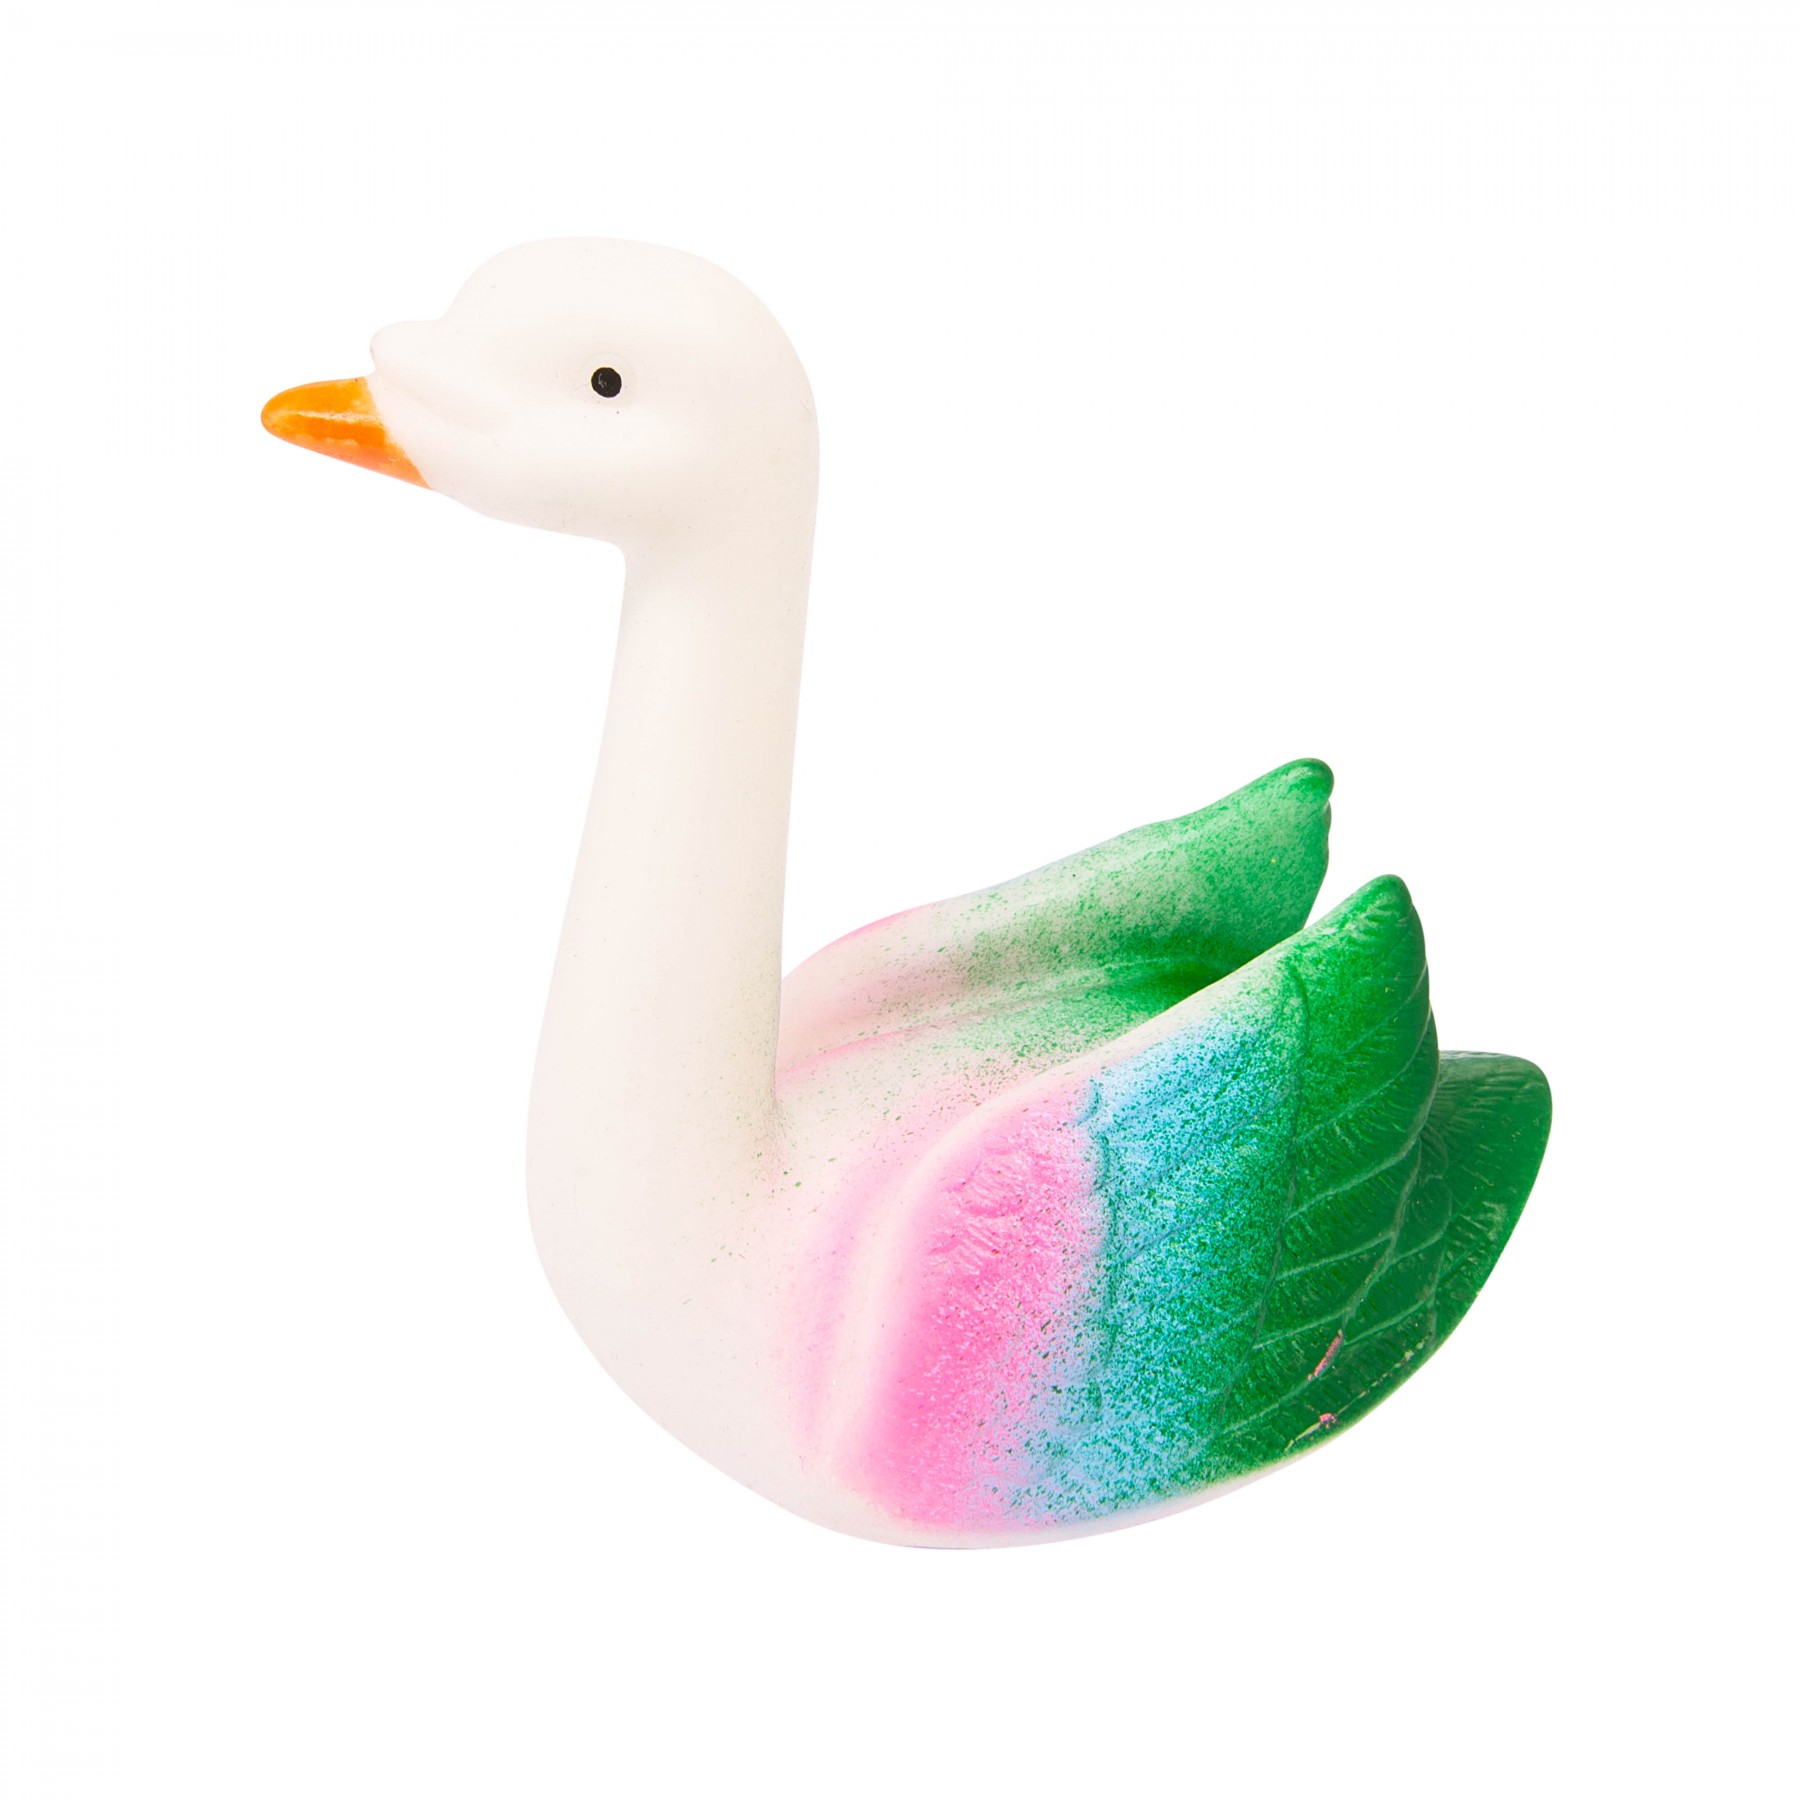 Hilda the swan